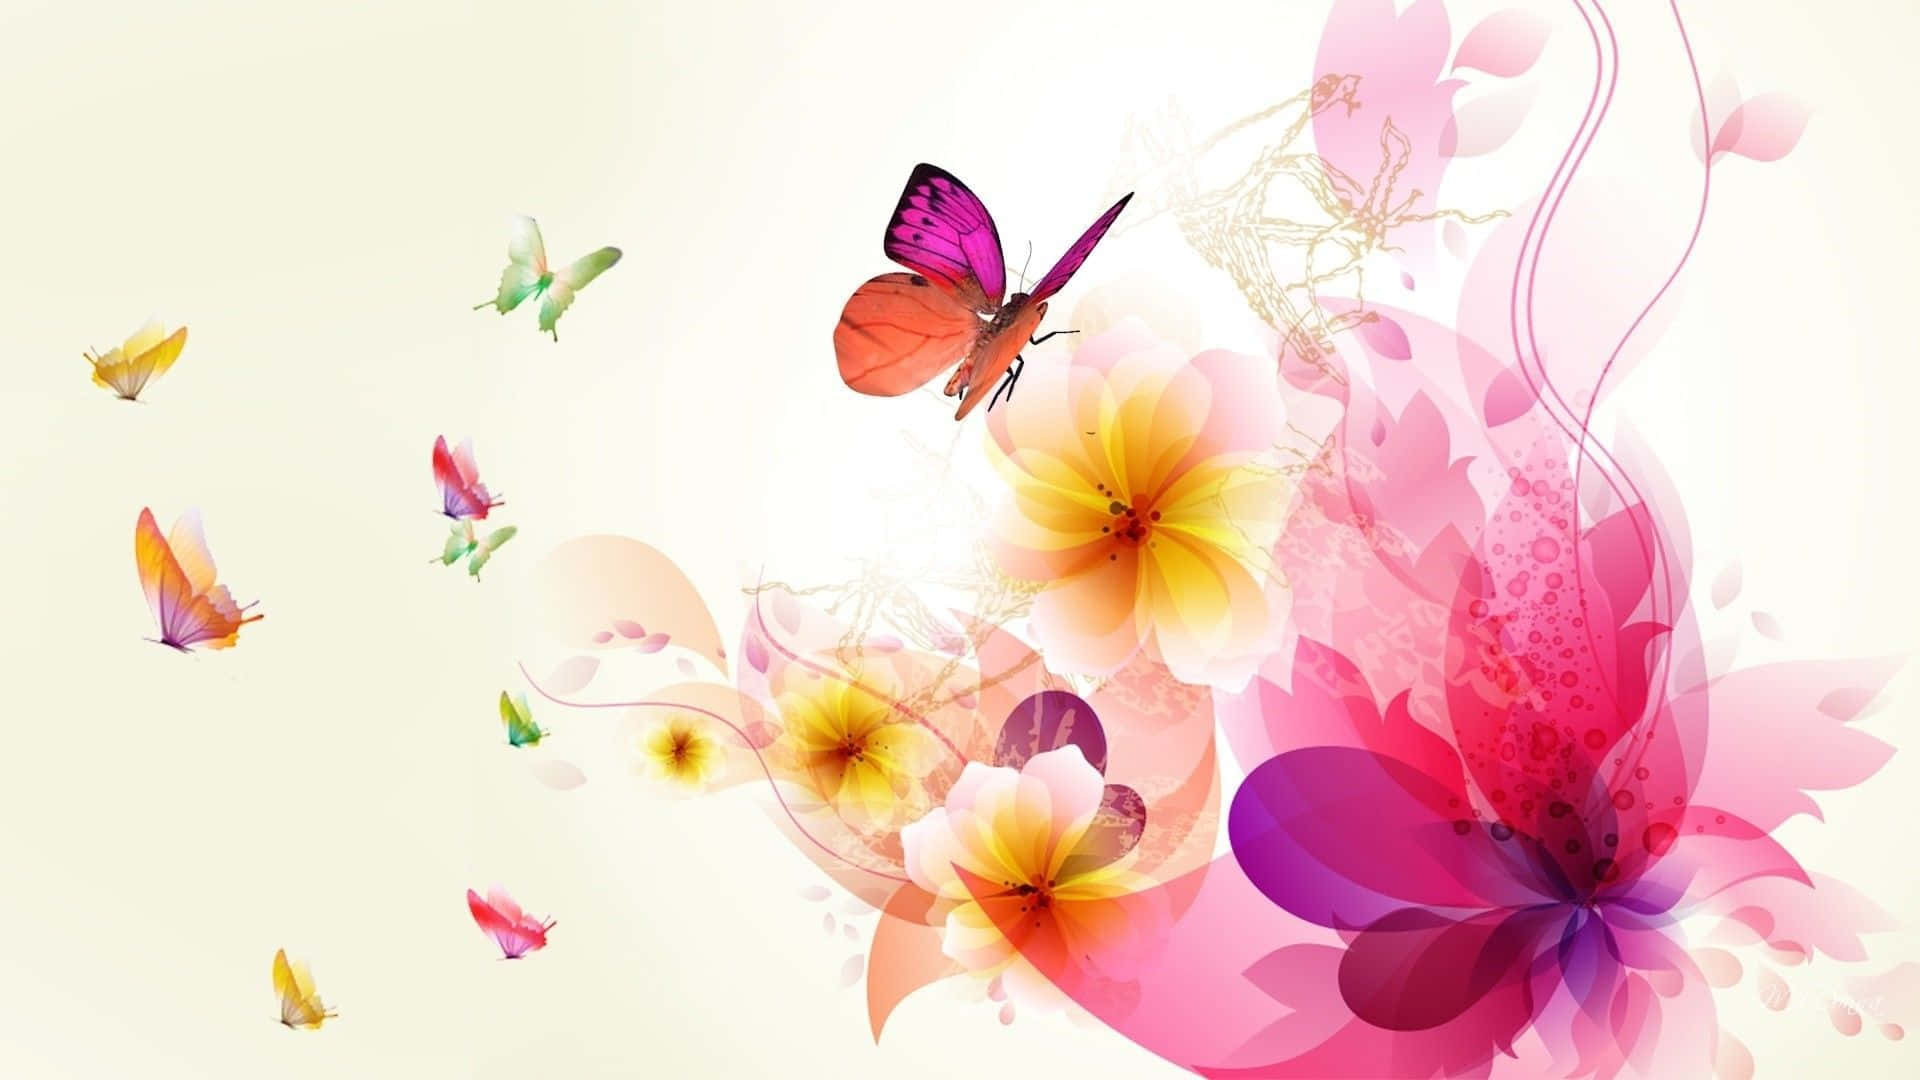 Vibrant Floral Art Display Wallpaper